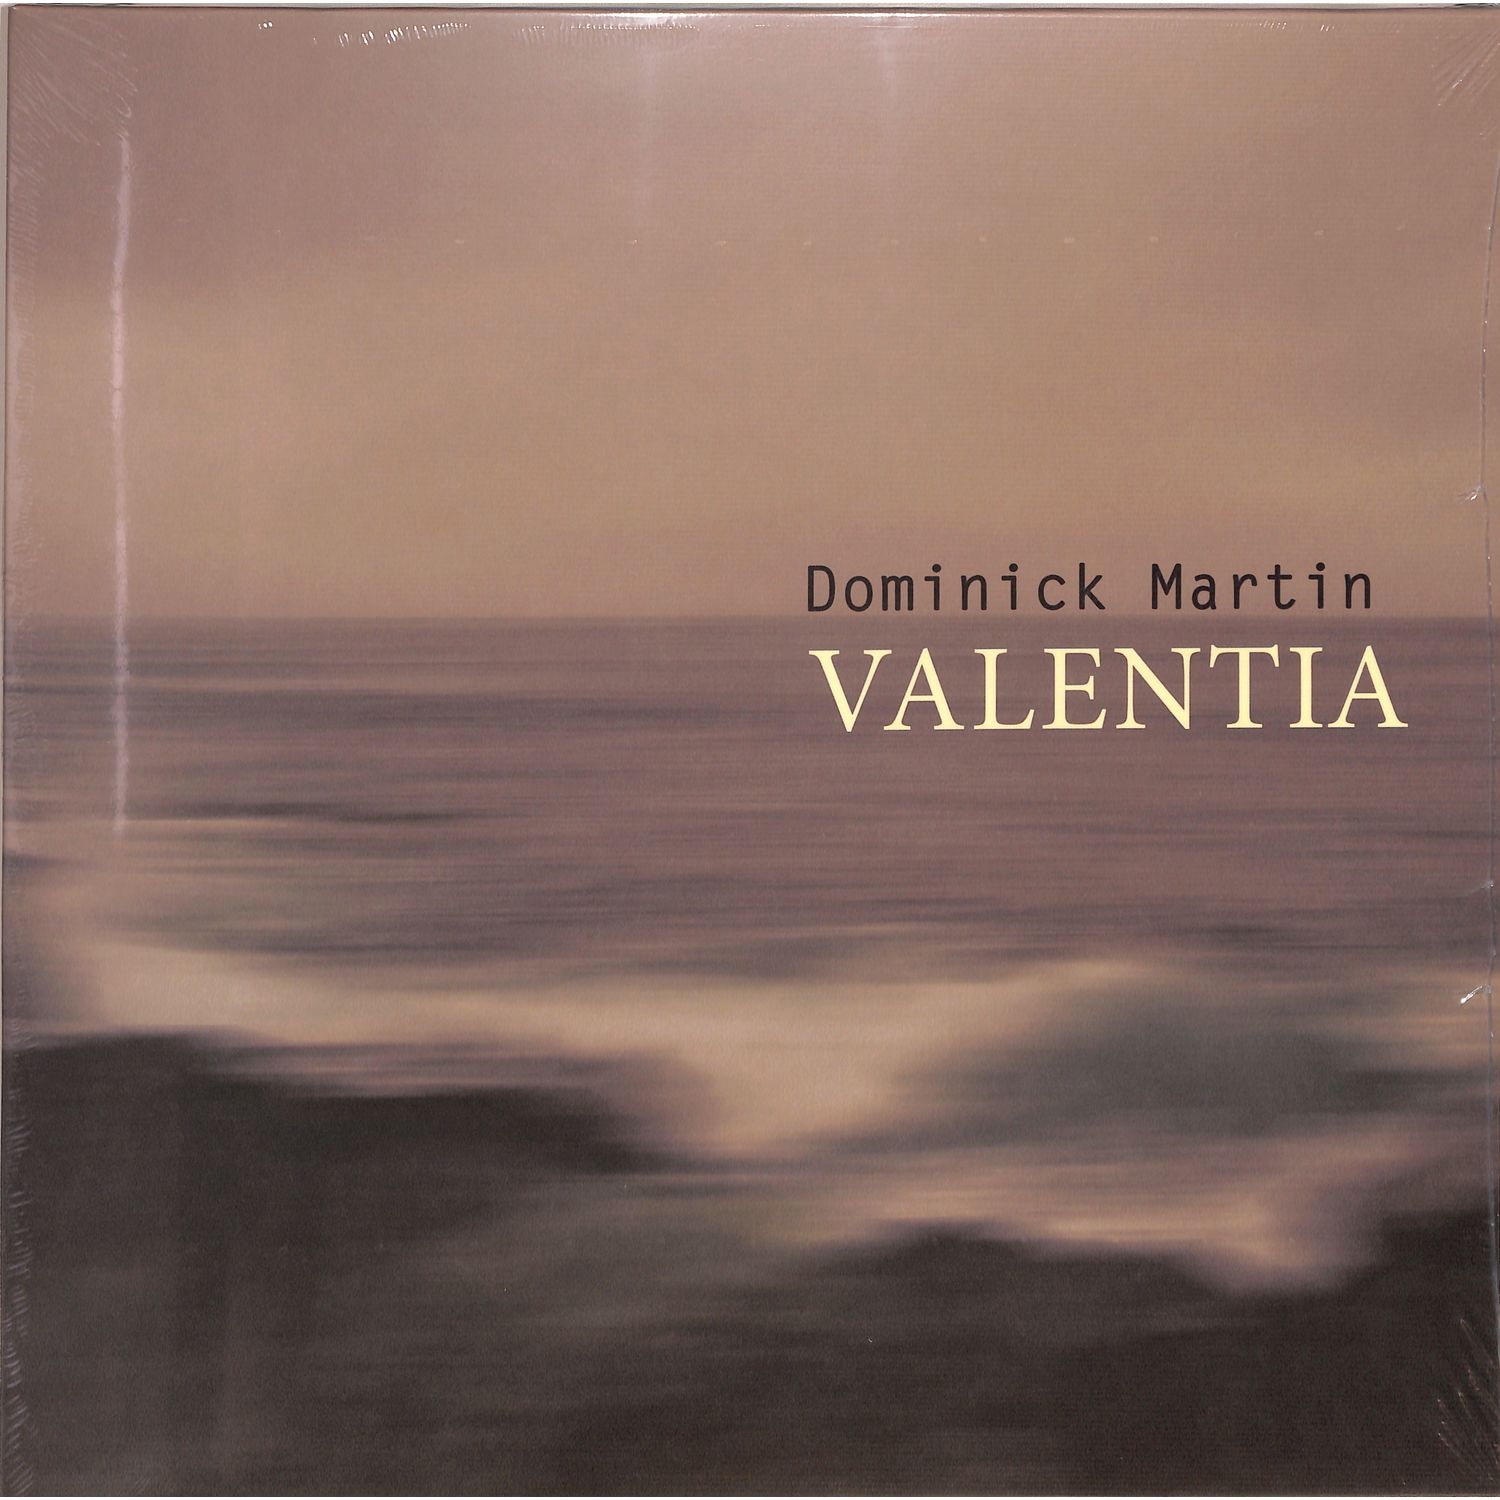 Dominick Martin - VALENTIA 